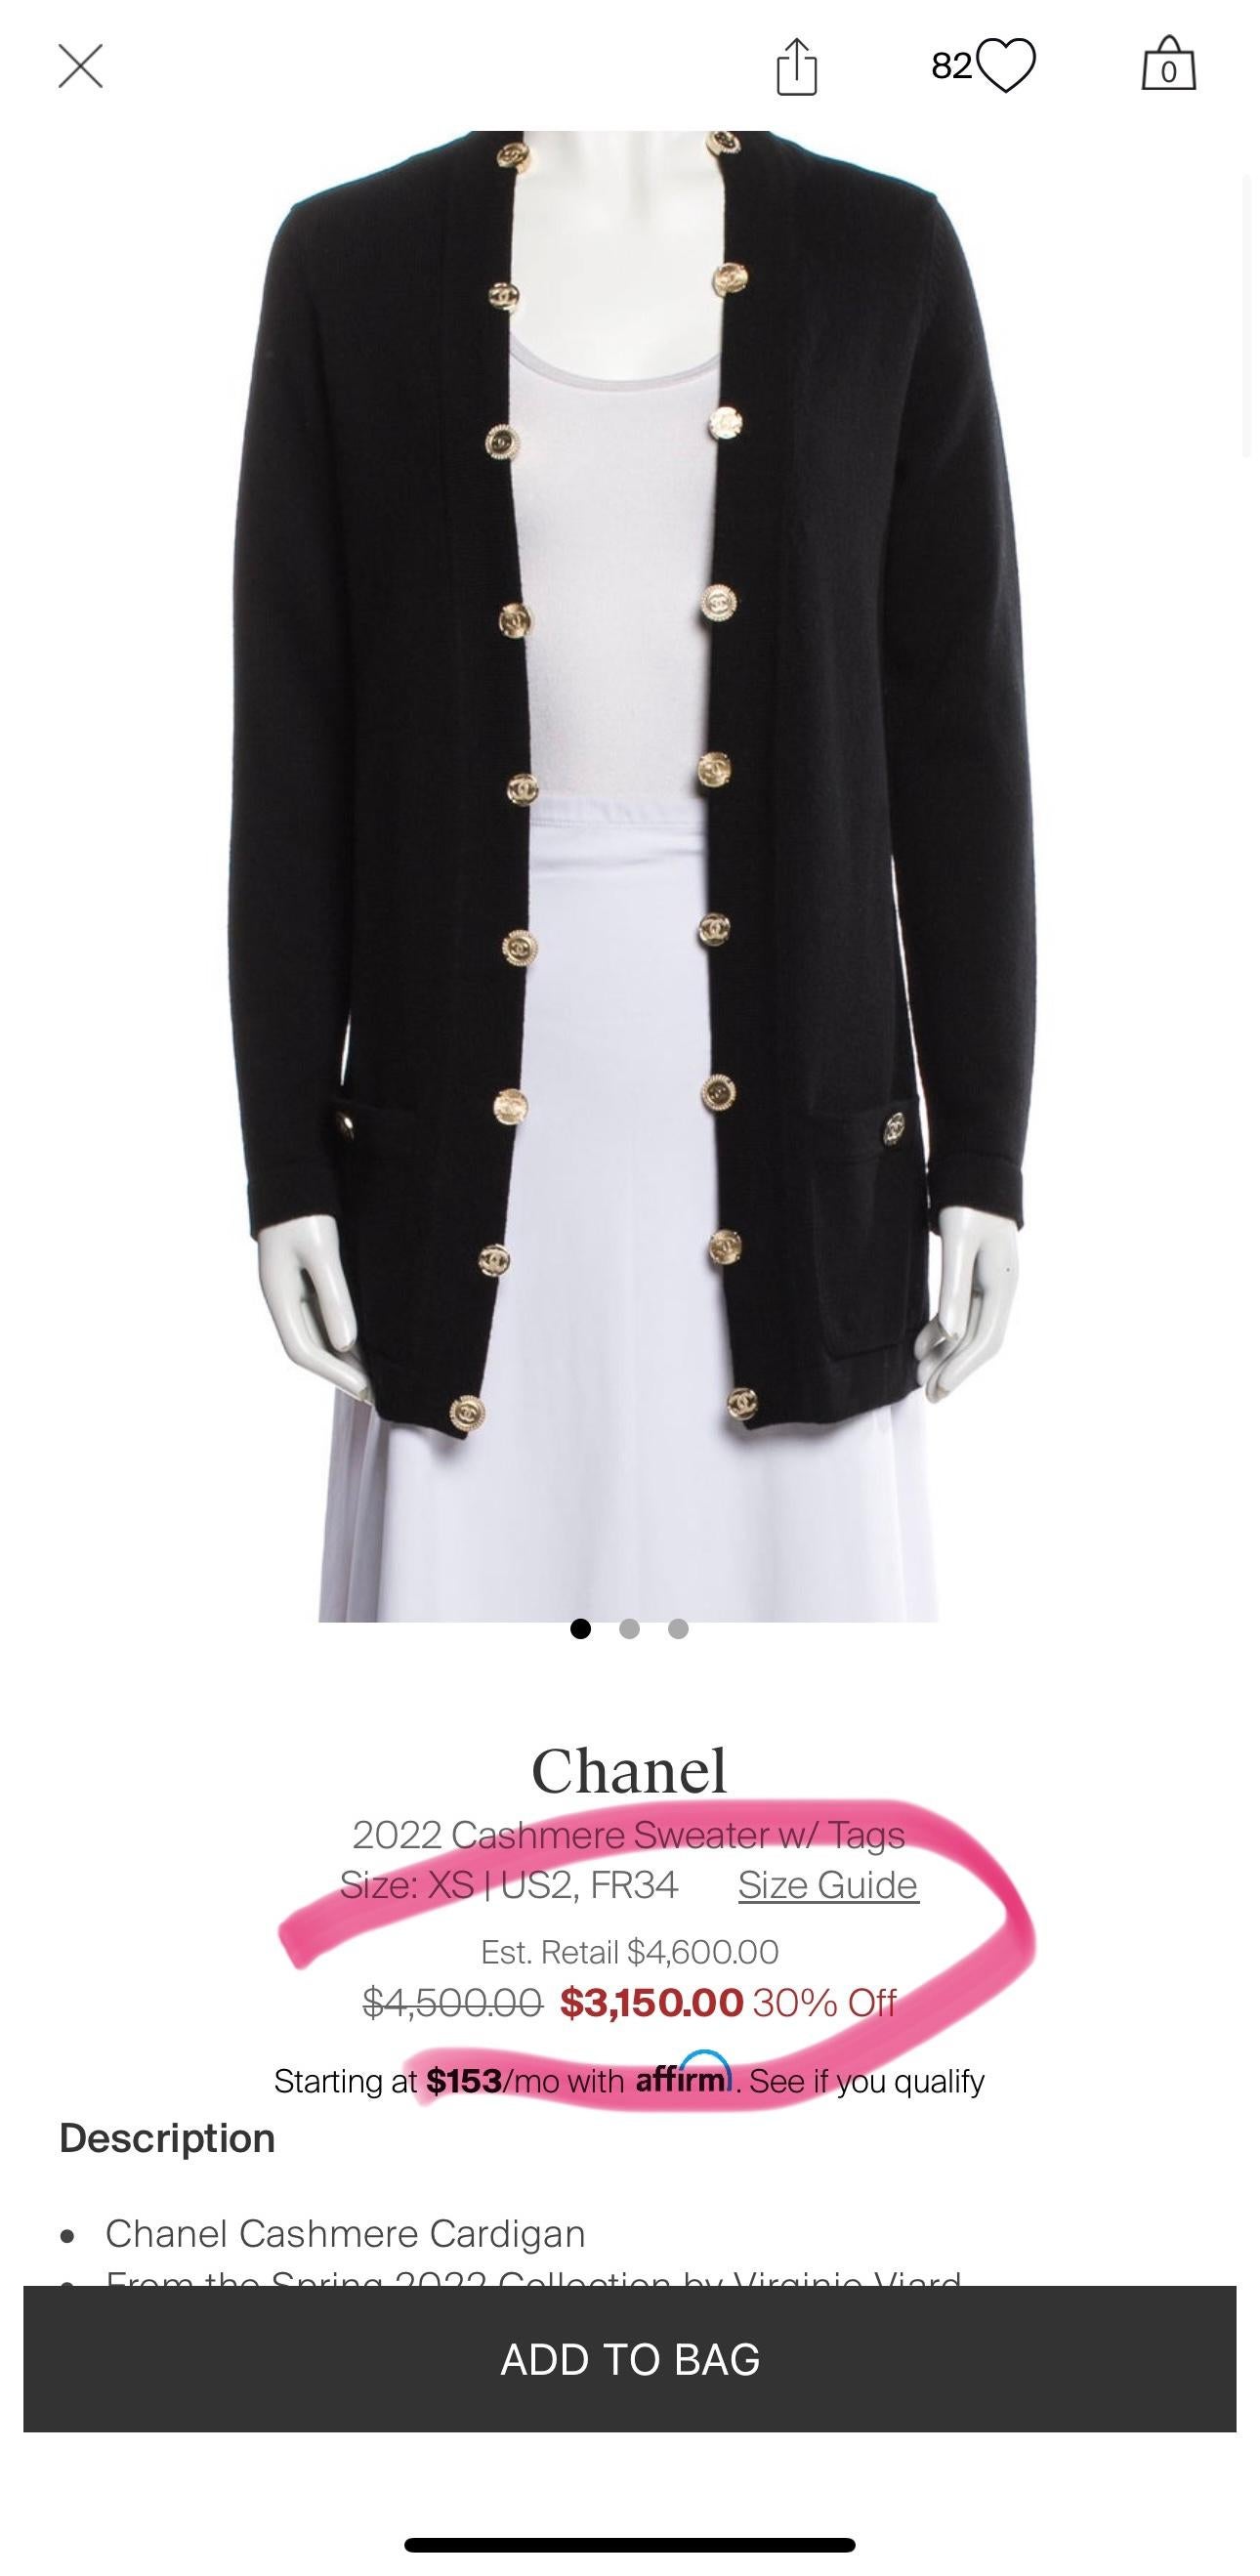 Wunderschöne schwarze Kaschmir-Strickjacke von Chanel mit mehreren CC-Logo-Knöpfen : aus der Spring Collection 2022 von Frau Virginie Viard.
Größenbezeichnung 34 FR. Nie getragen